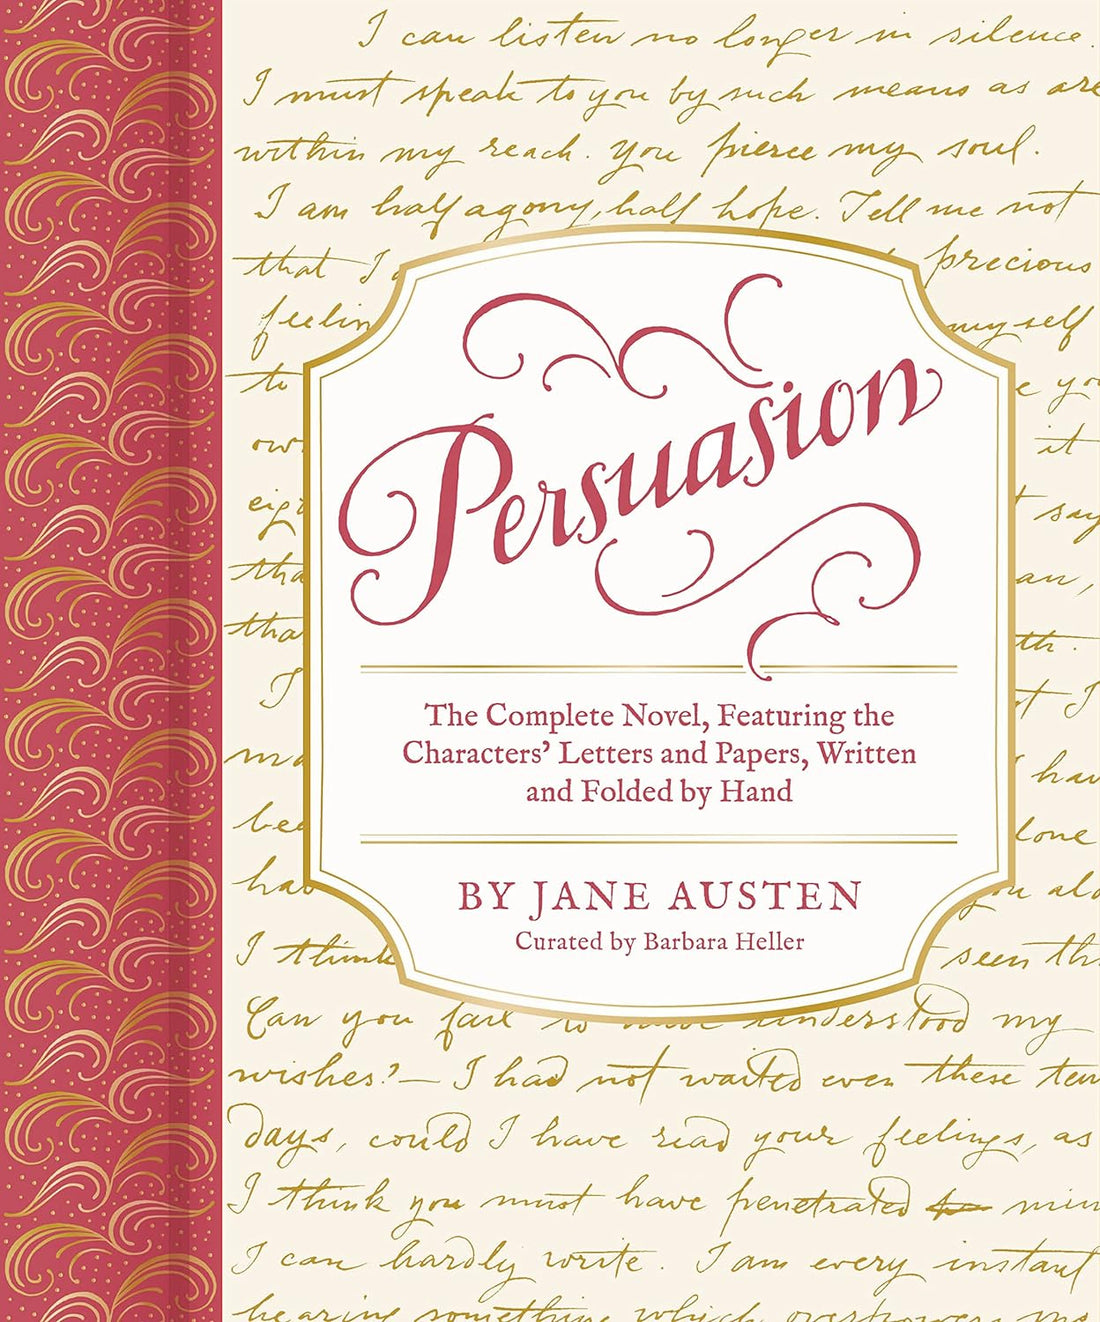 Persuasion Book